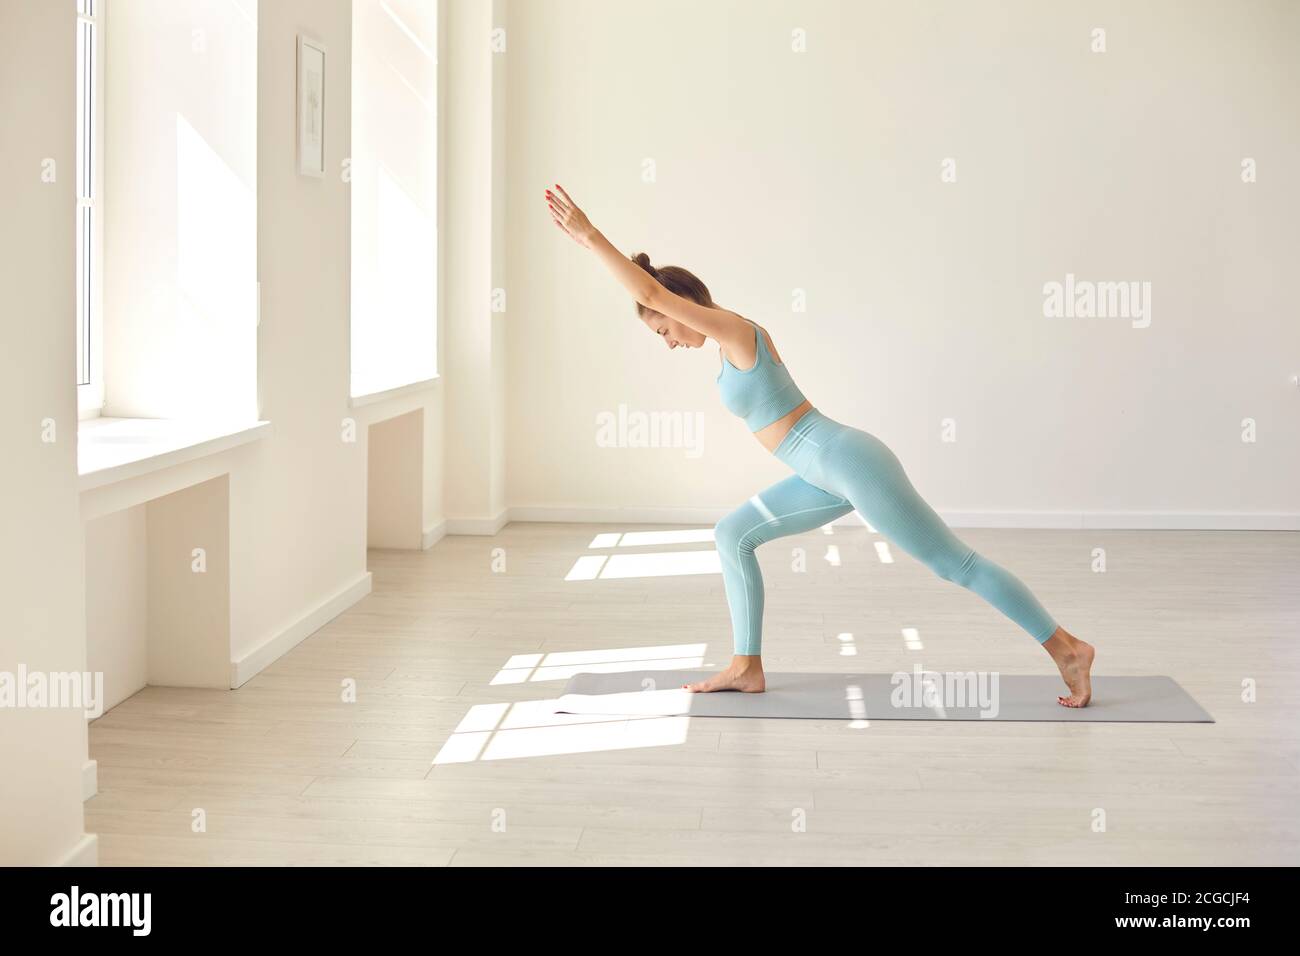 Serious junge Frau üben Ausbalancieren Asana stehen auf Gummi-Matte Während des Yoga-Trainings im Fitnessstudio Stockfoto